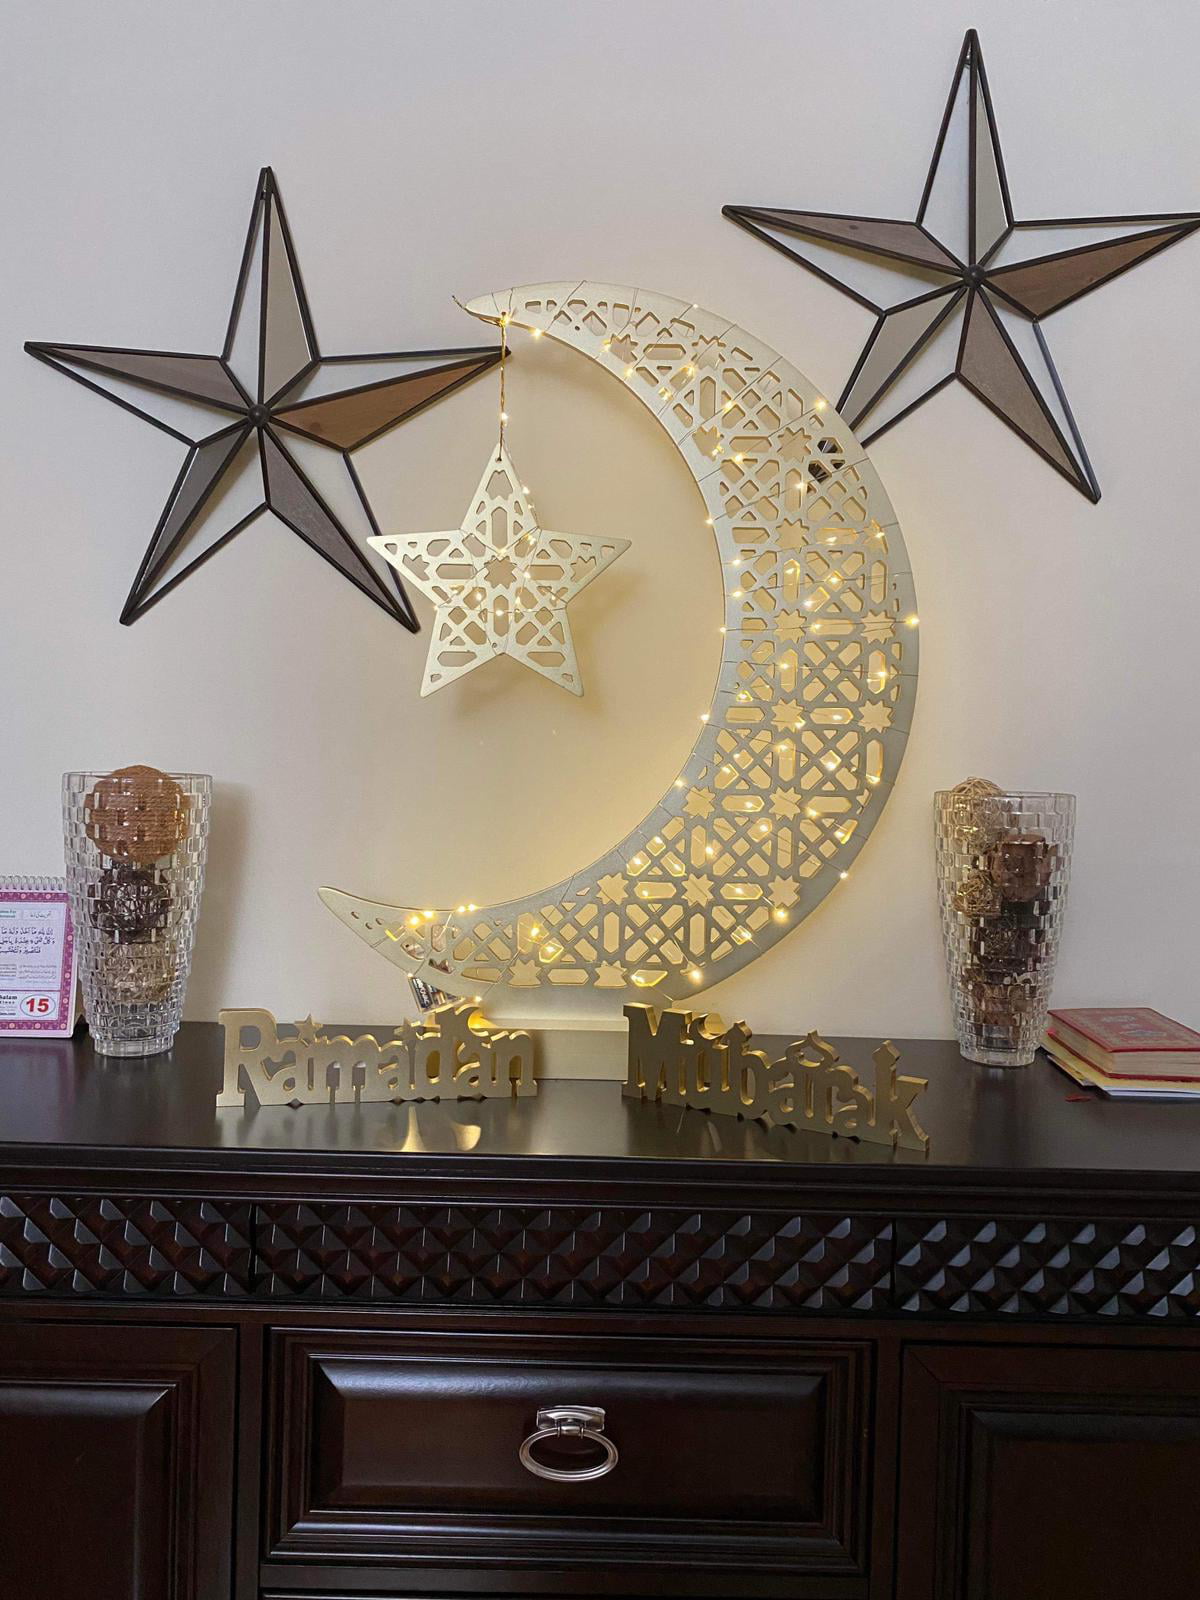 LTS FAFA Lampe à LED en bois Ramadan Décoration Crescent Moon Star Lights  Musulman Islam Eid Ramadan Festival Décorations Crescent Moon Night Light  pour les fêtes, la maison et les cadeaux (C) (